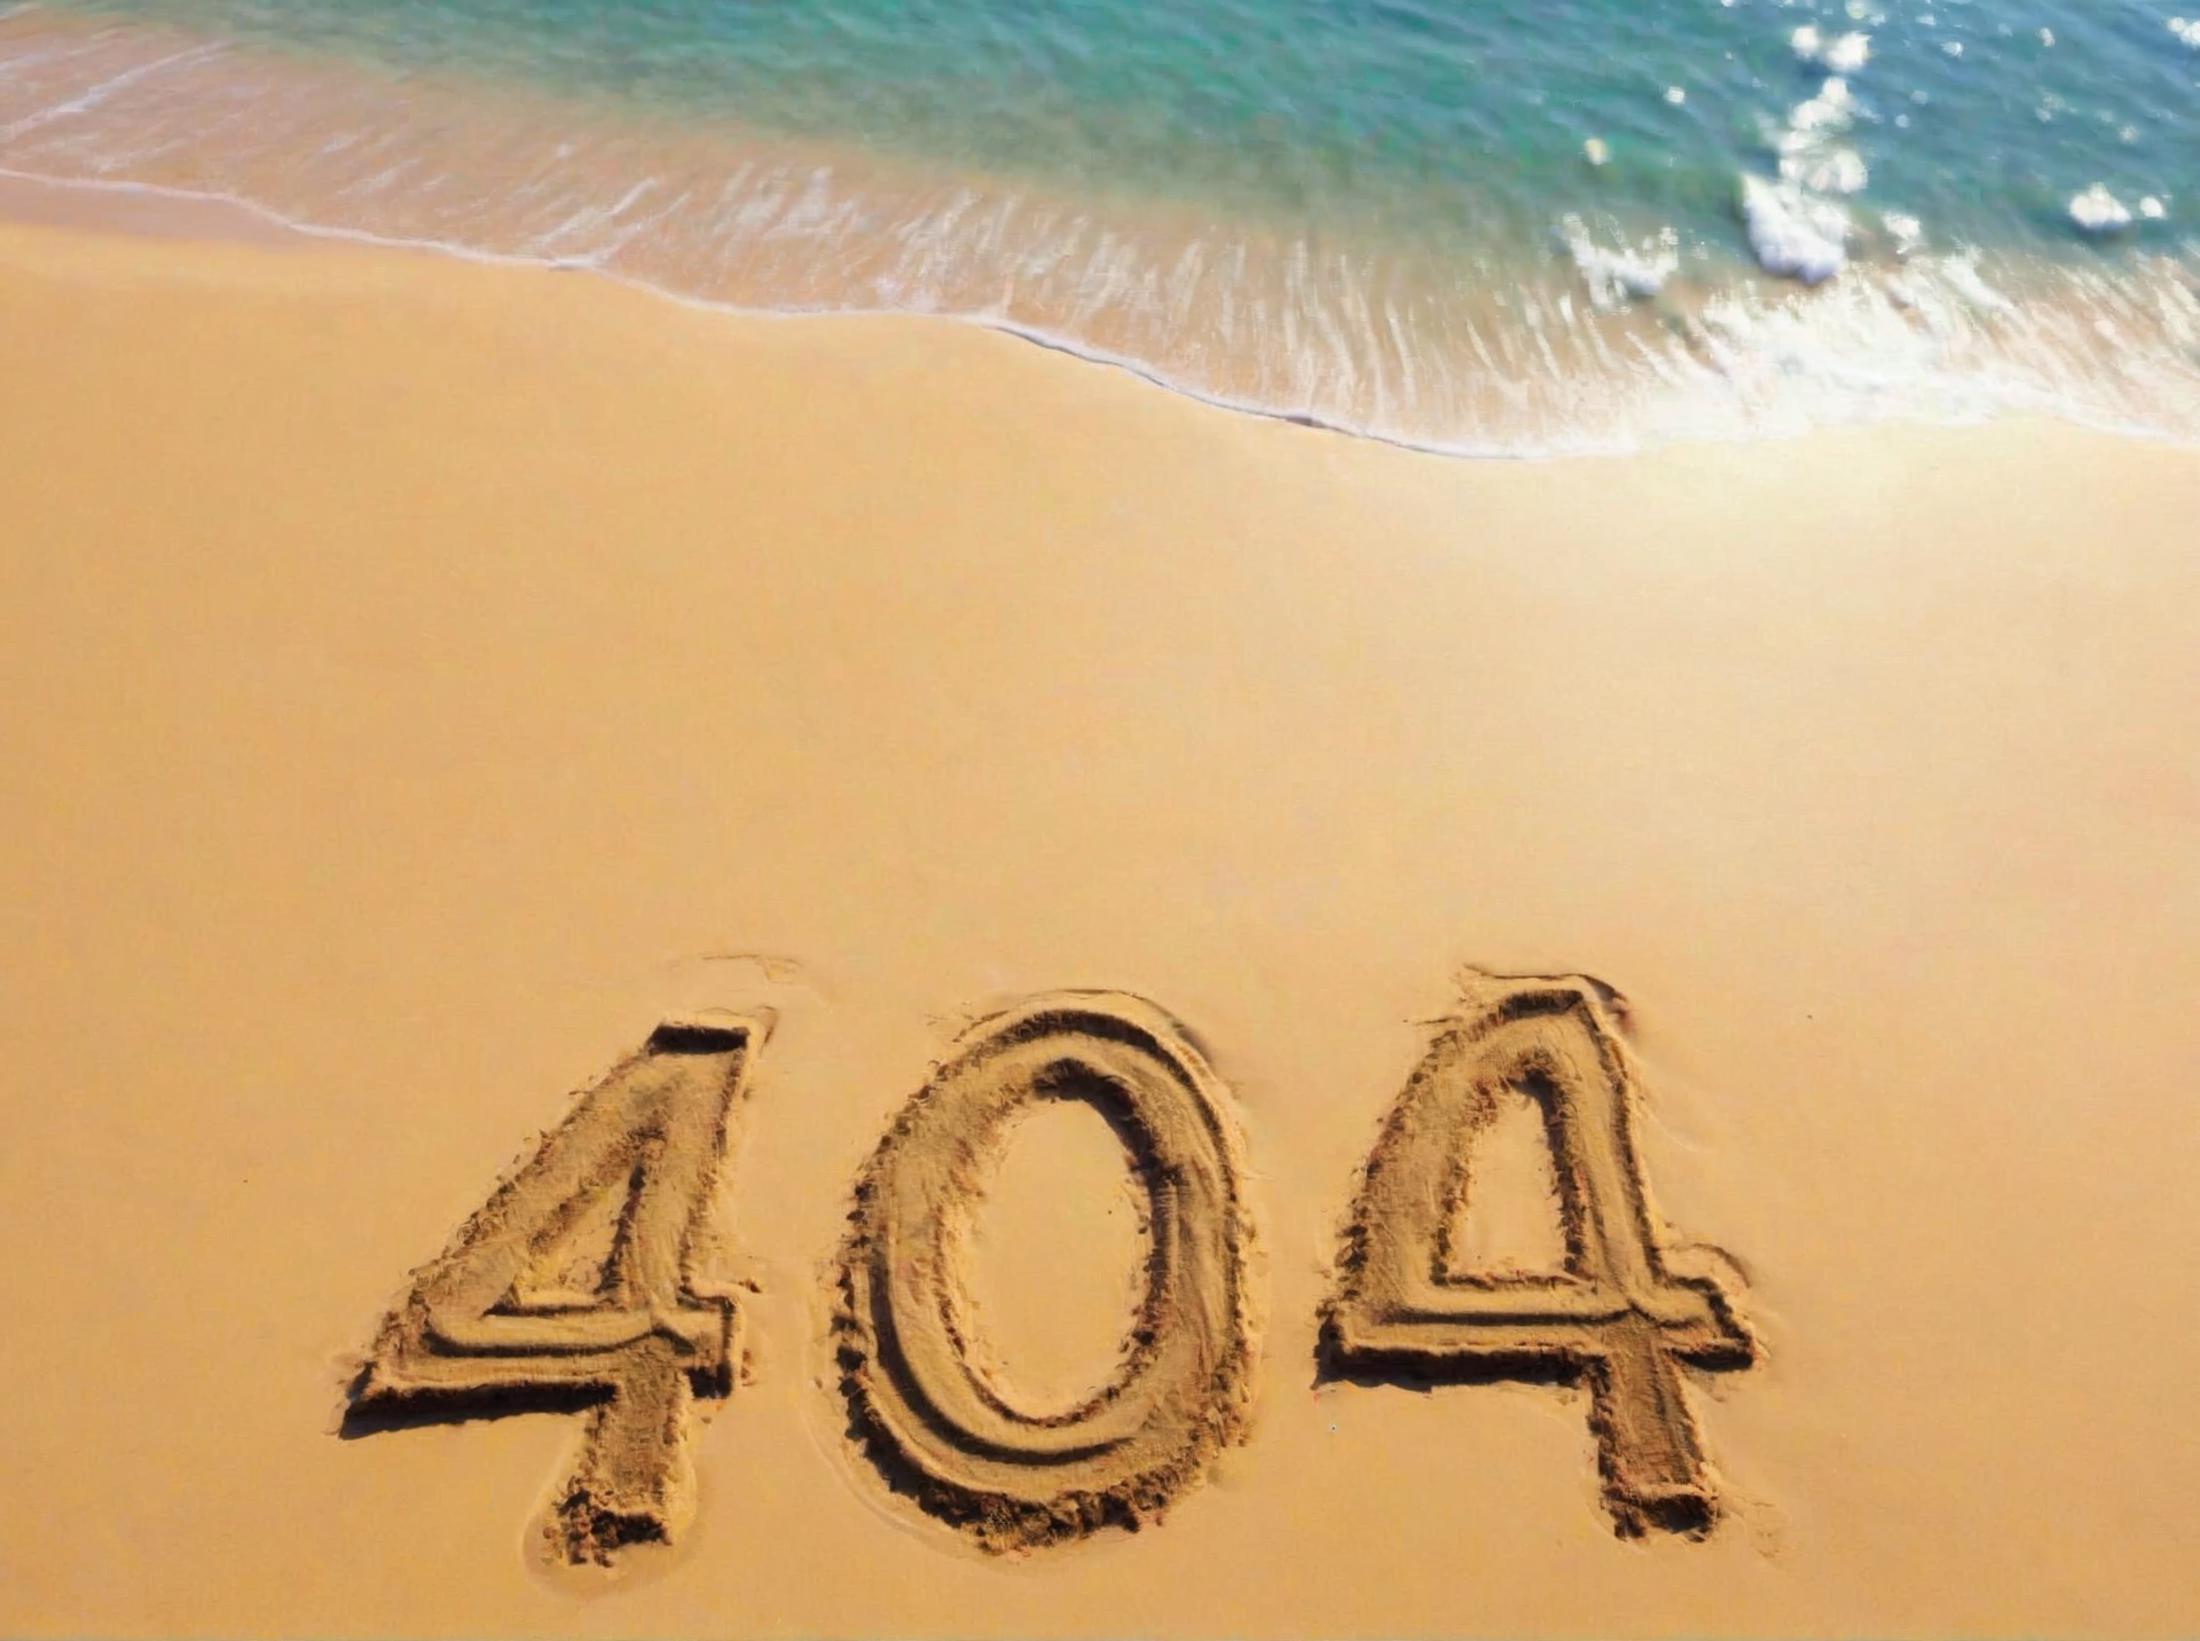 404 Error Beach Sand Art: A 404 error message is created in the sand on the beach.